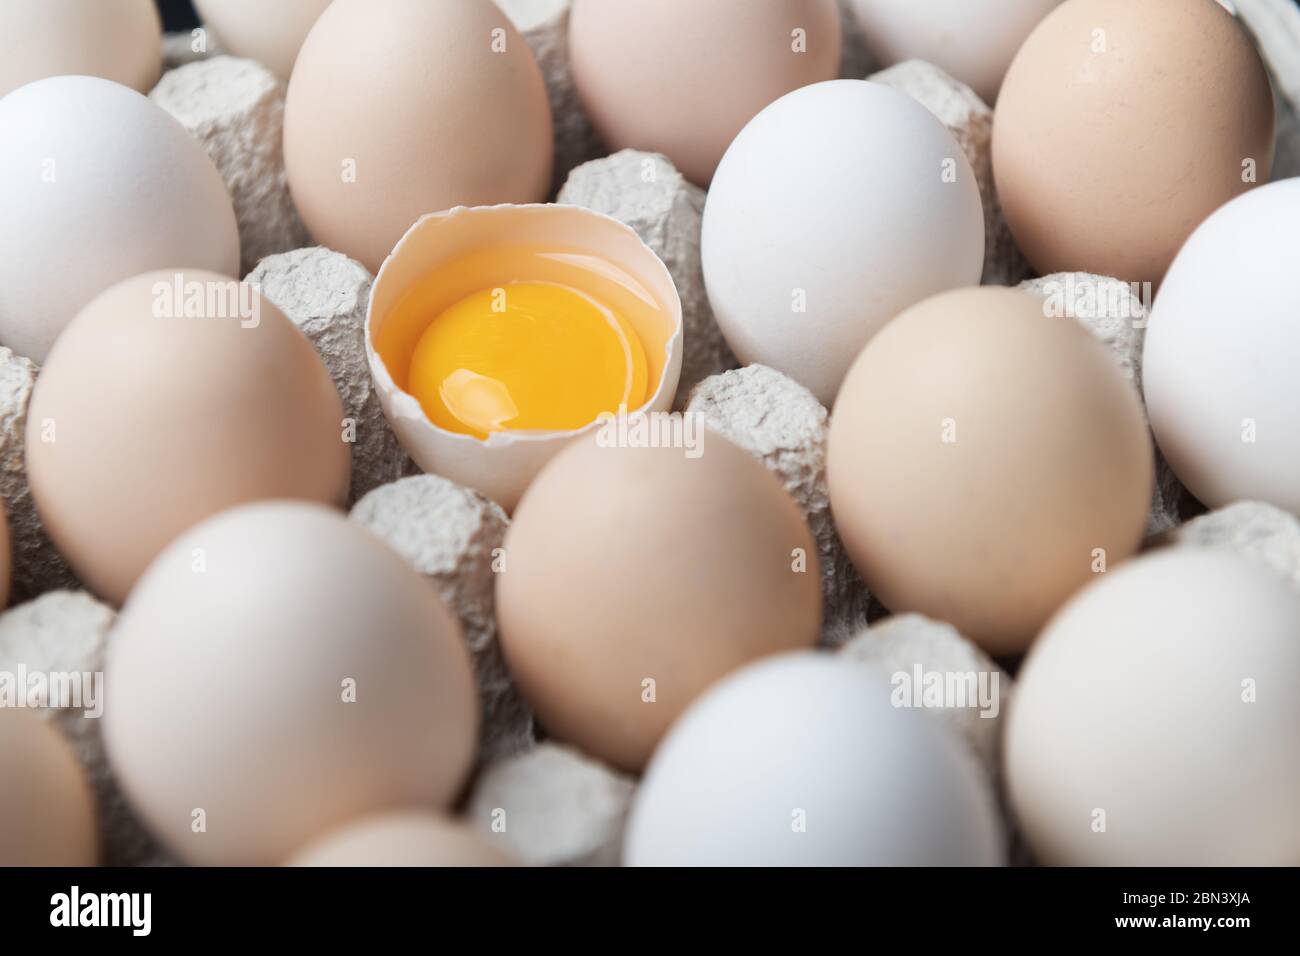 Œufs de poulet dans un emballage biologique. Moitié d'oeuf cassée entre autres œufs. Photographie alimentaire Banque D'Images